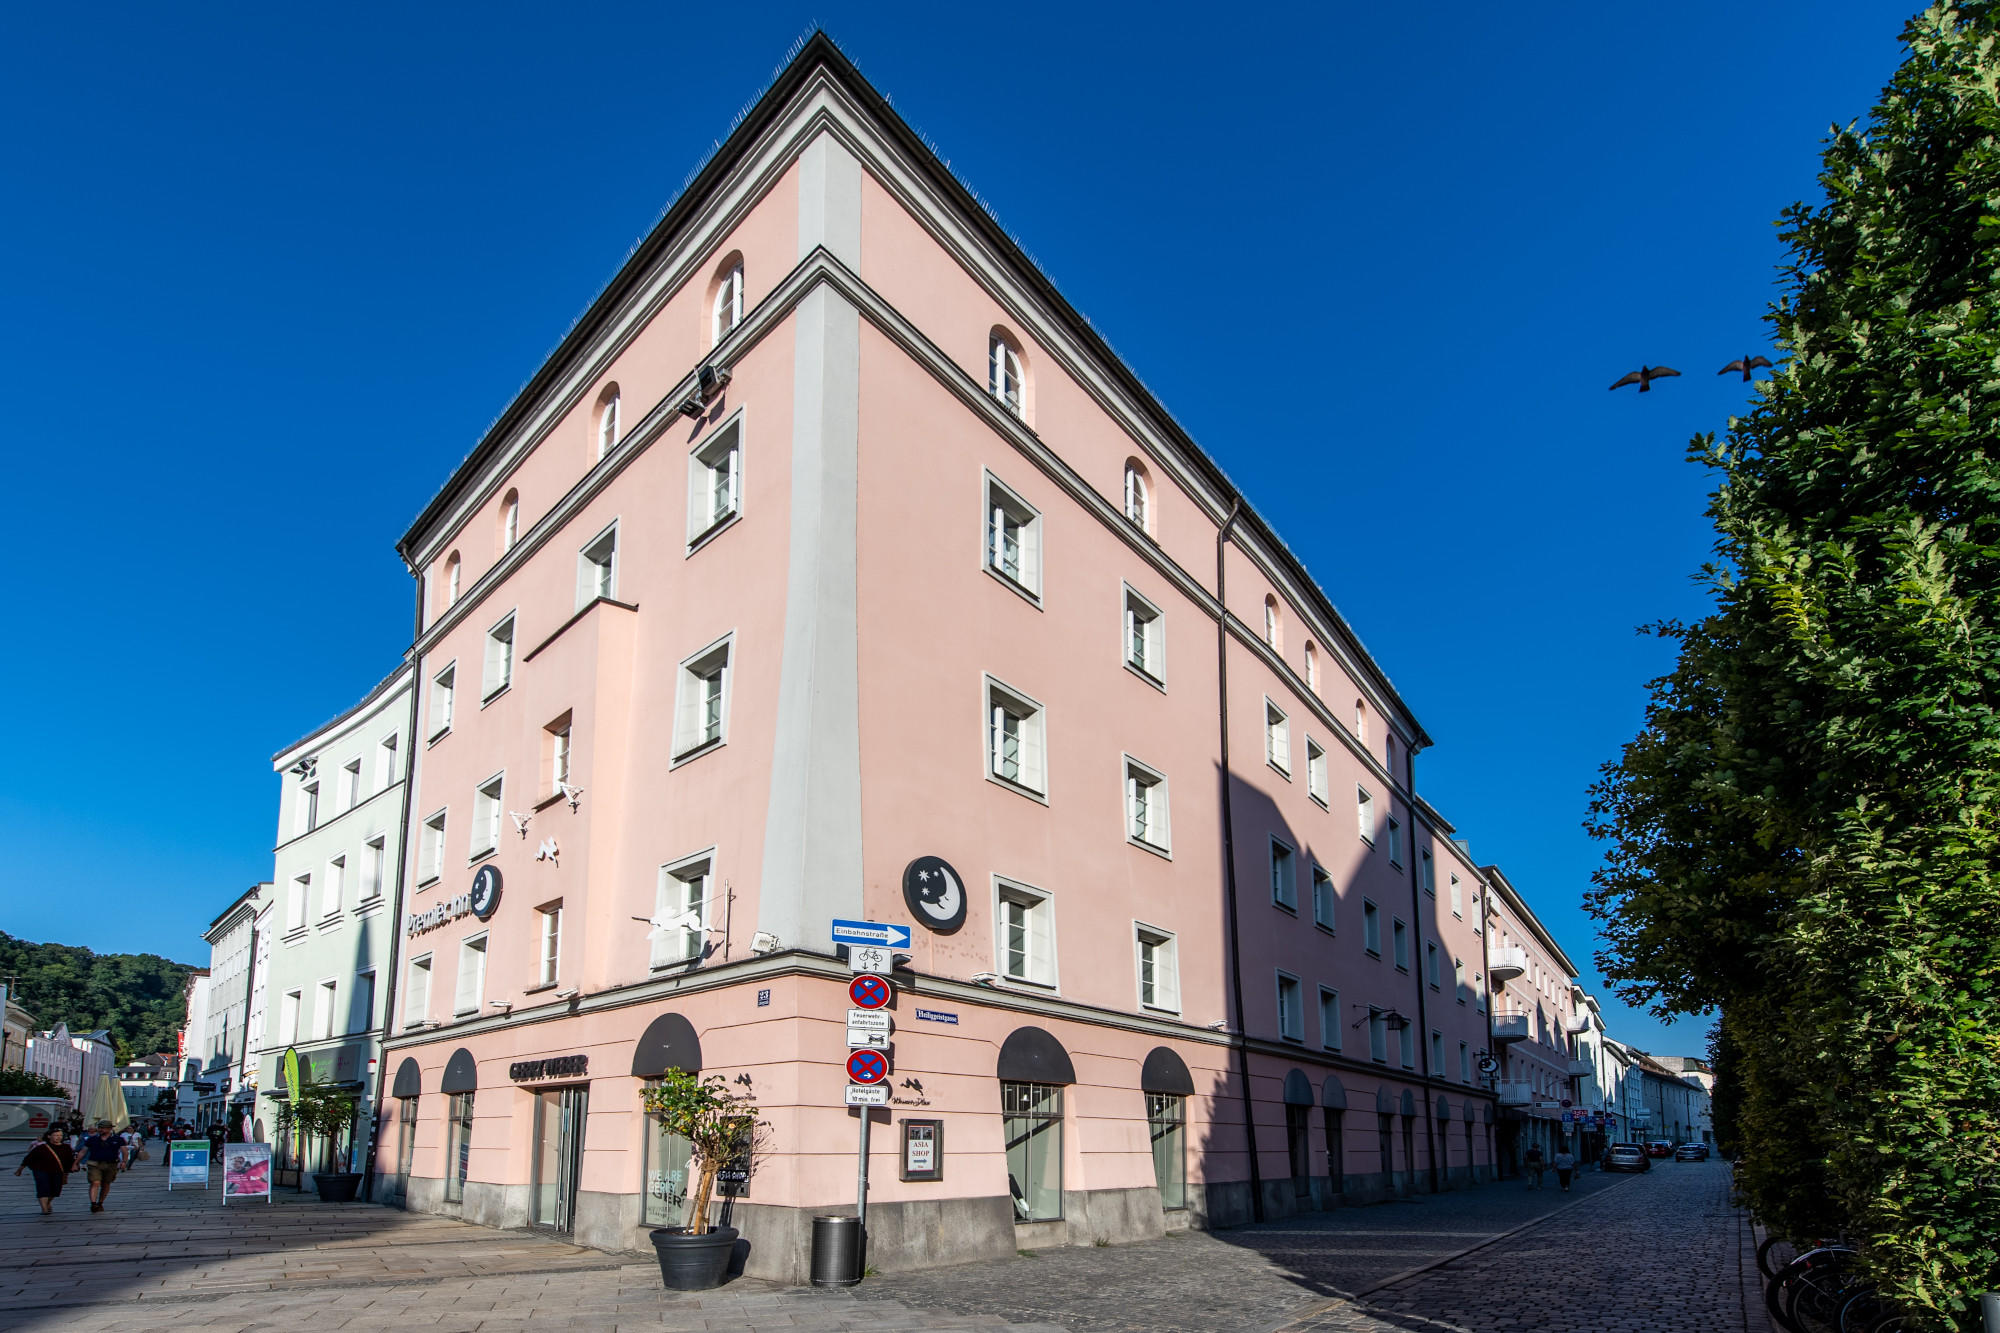 Kundenbild groß 1 Premier Inn Passau Weisser Hase hotel